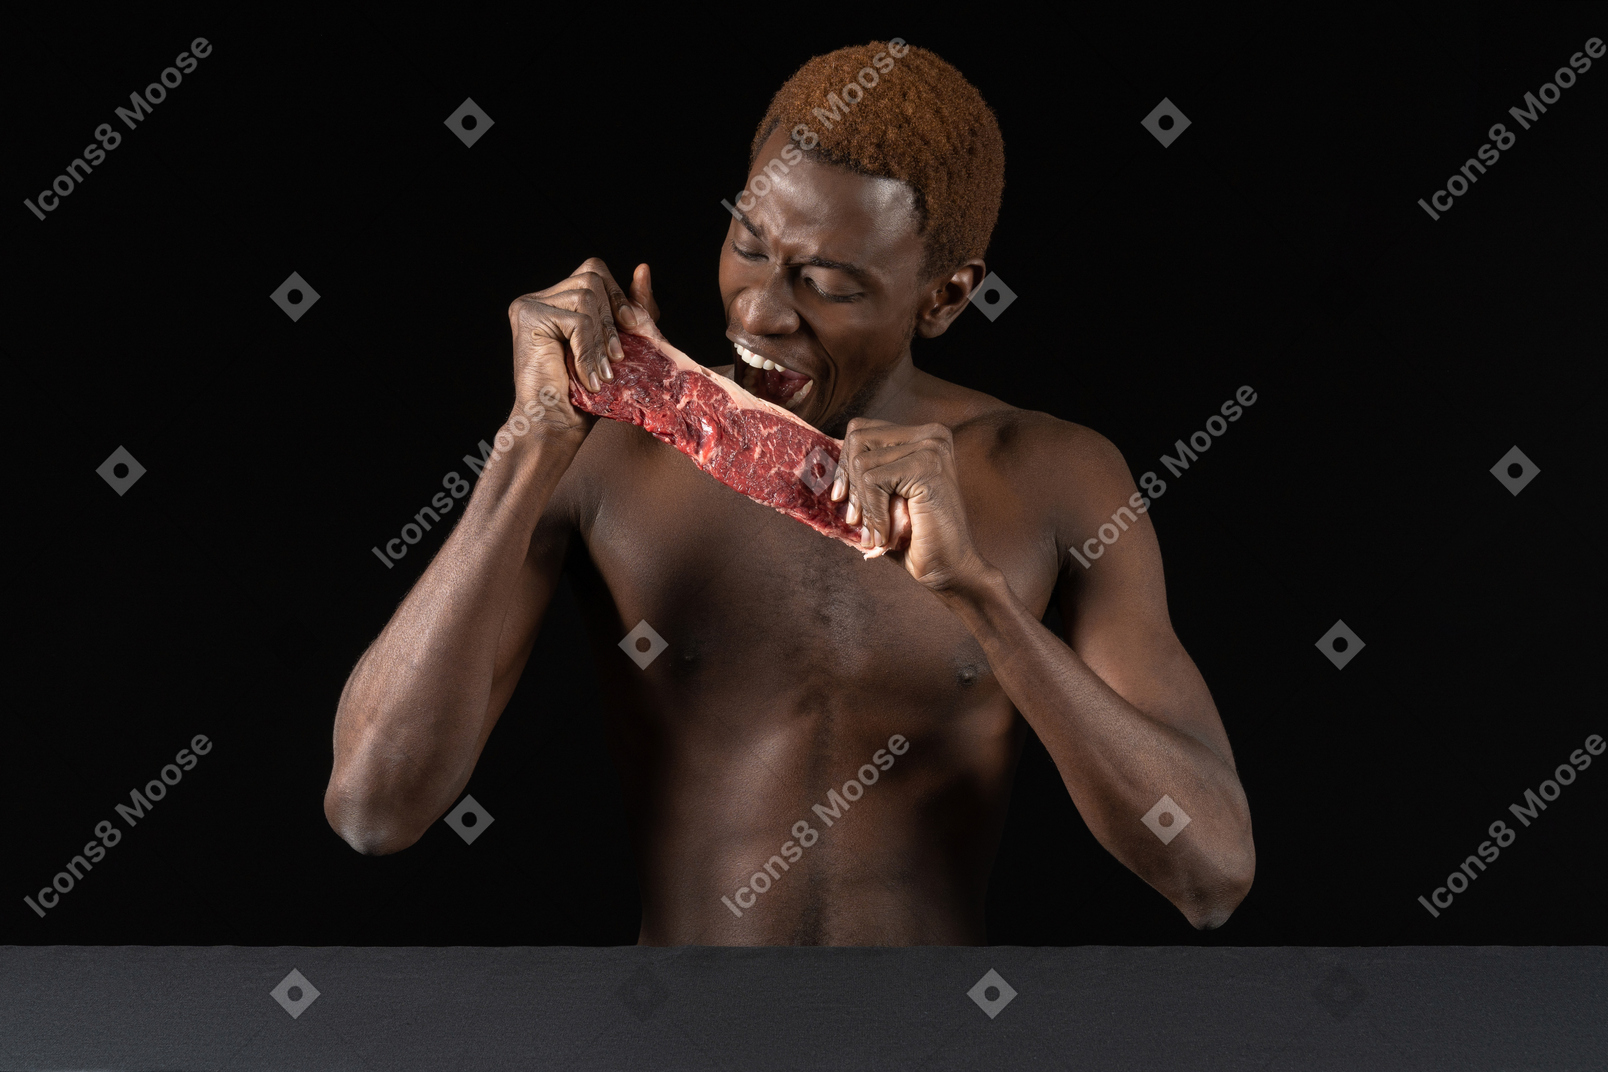 Vista frontale di un giovane afro che morde una fetta di carne